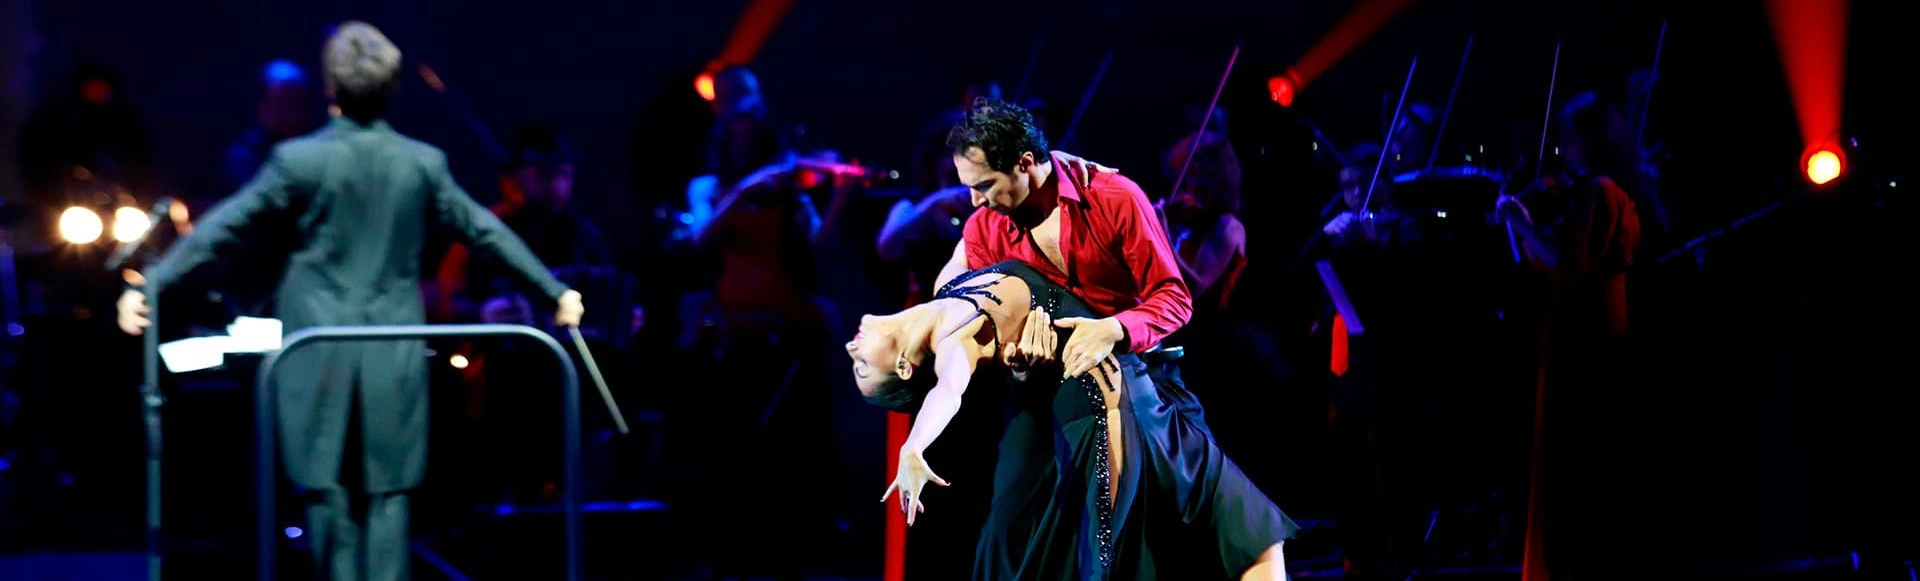 Танго страсти Астора Пьяццоллы»: Шоу, объединившее эмоции и музыку в ослепительном танцевальном проекте!